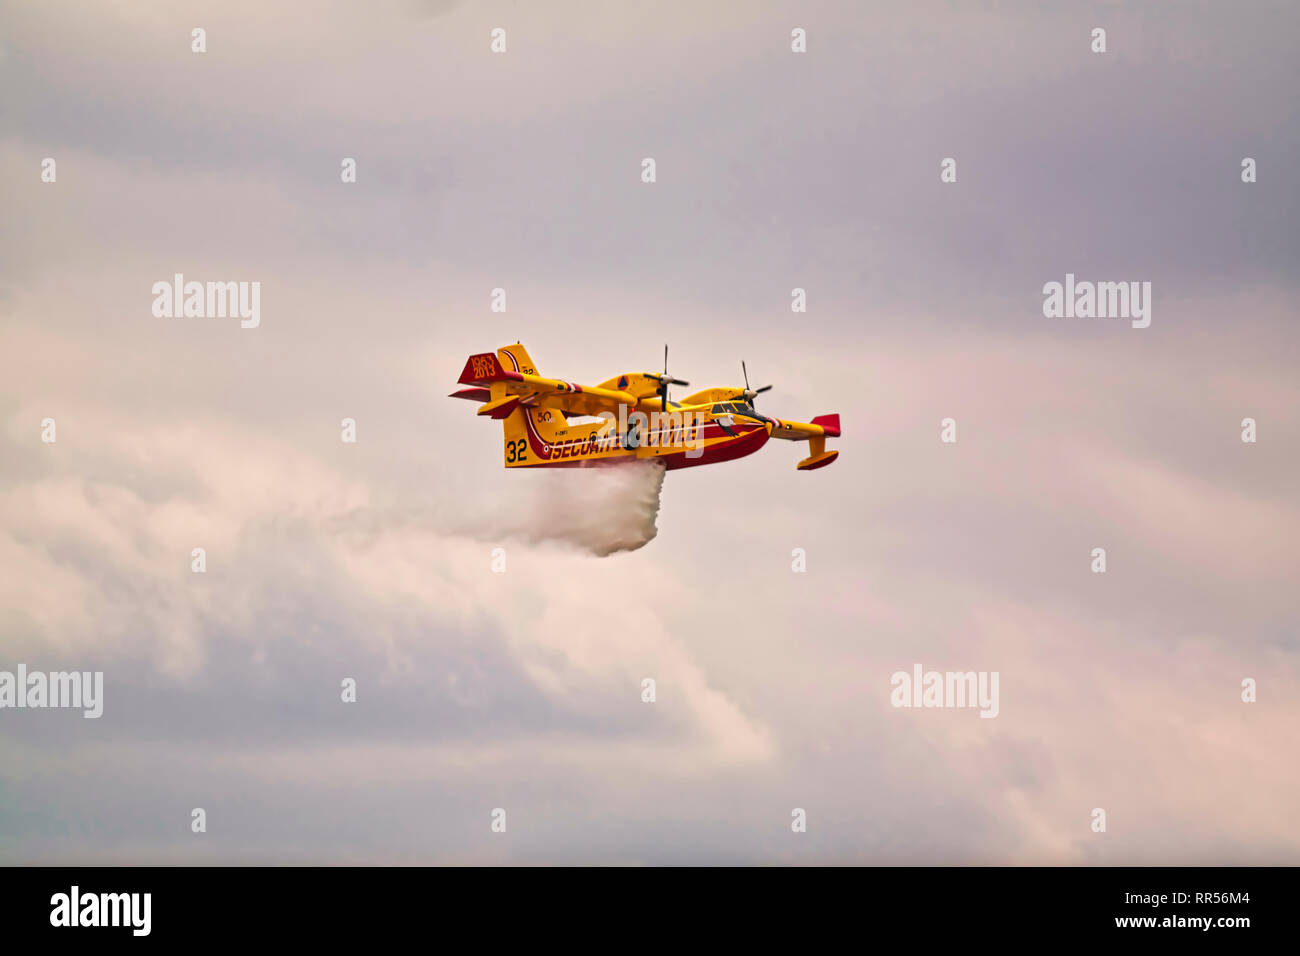 In LE BOURGET, Frankreich - 24. Juni 2017. Kleine gelbe rote Wasserflugzeug Wasserflugzeug fliegen in den Himmel mit Wolken droping Wasser auf der Internationalen Luft- und Stockfoto